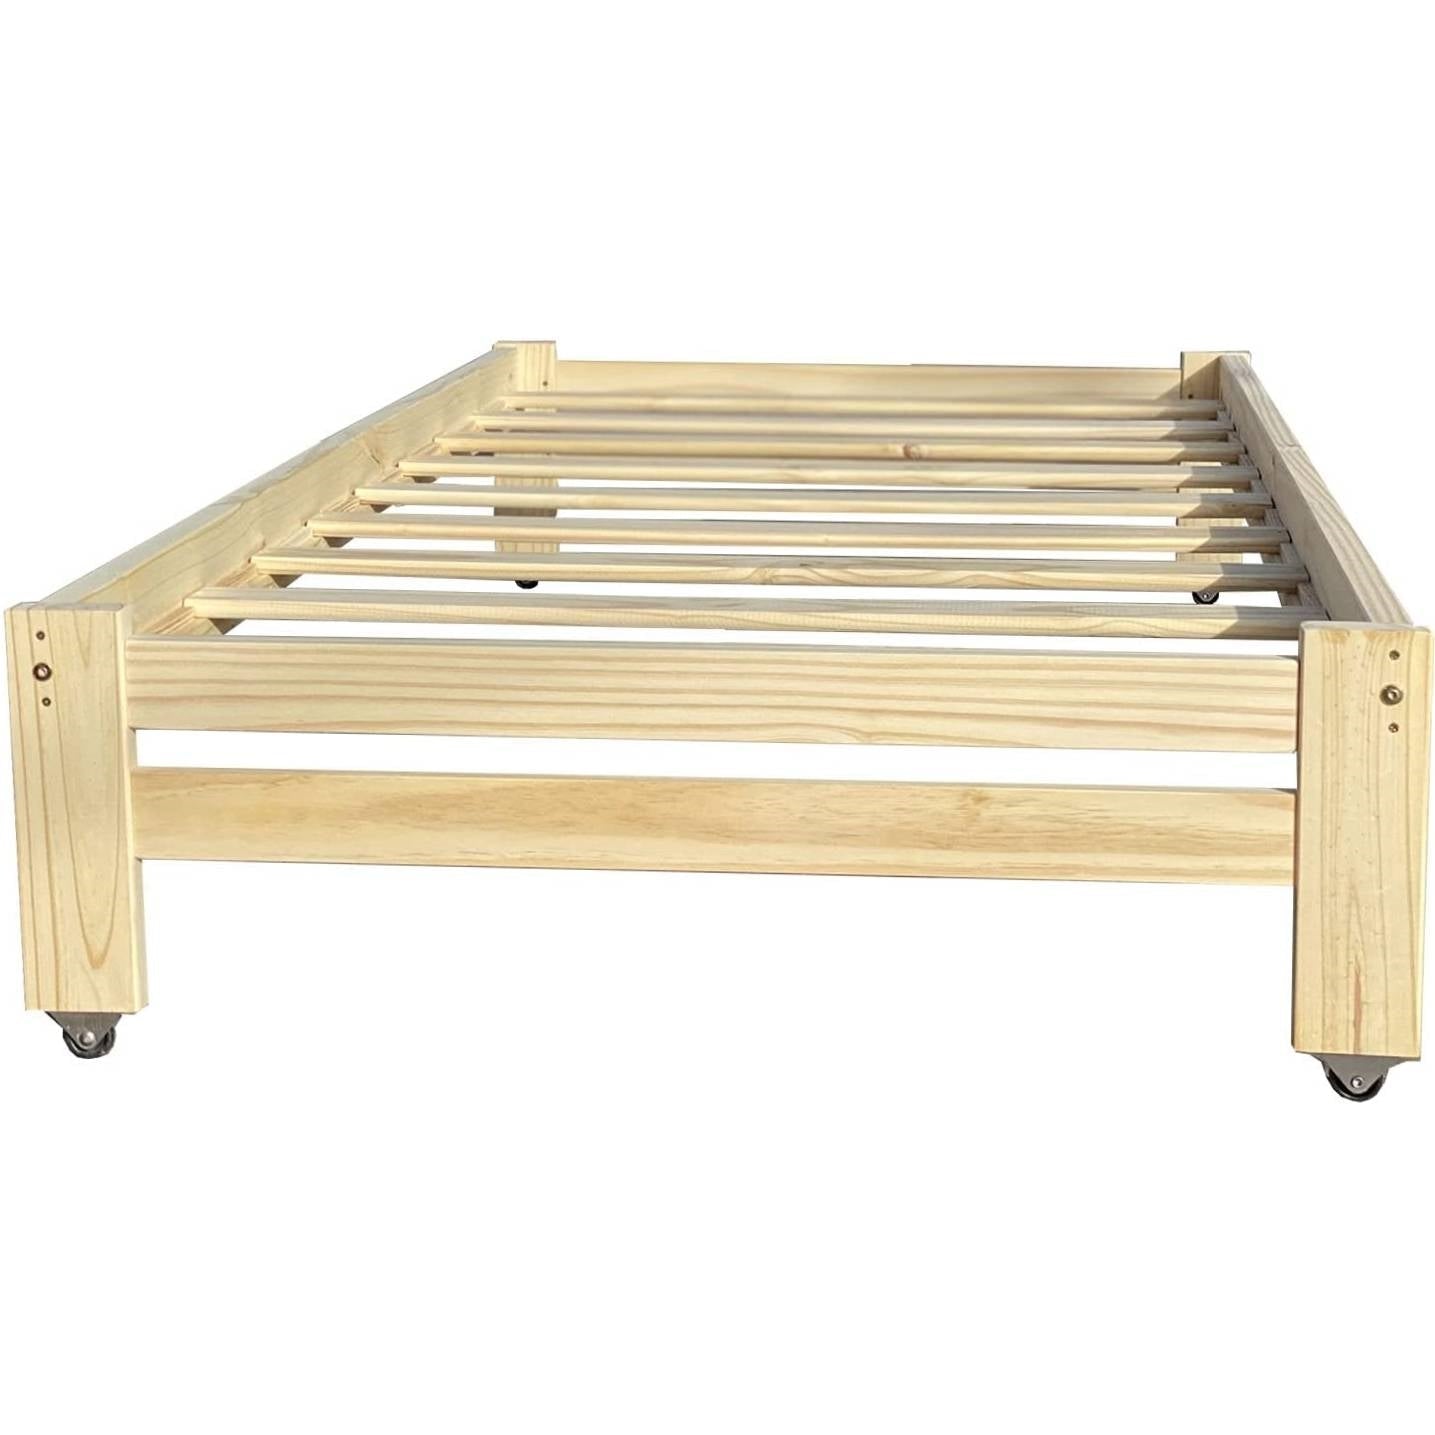 Bedroom > Bed Frames > Platform Beds - Twin Unfinished Solid Wood Platform Bed Frame With Casters Wheels